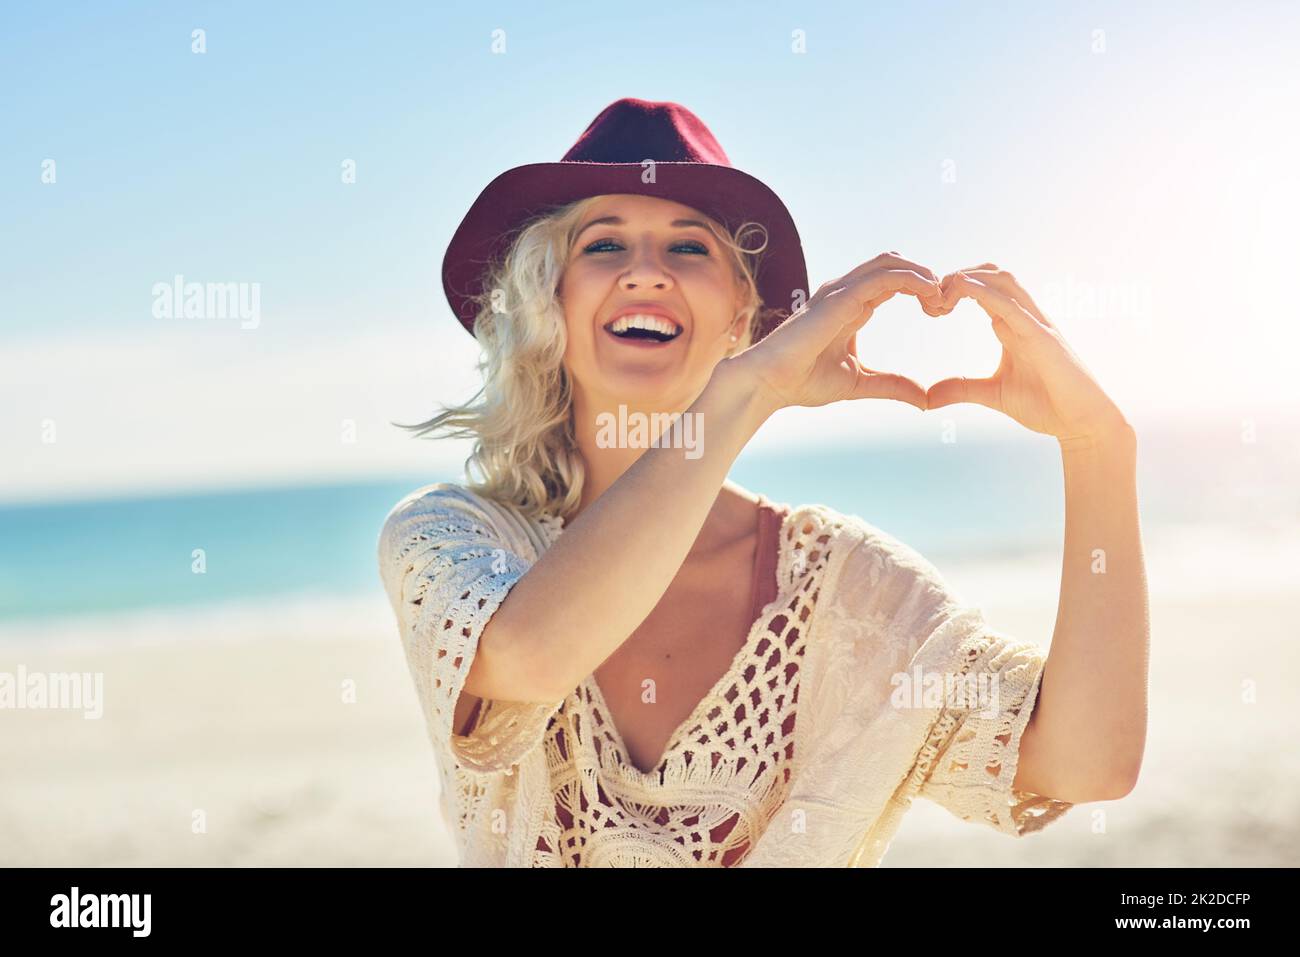 Ich habe so viel Liebe für den Strand. Eine kurze Aufnahme einer schönen jungen Frau, die den Tag am Strand verbringt. Stockfoto